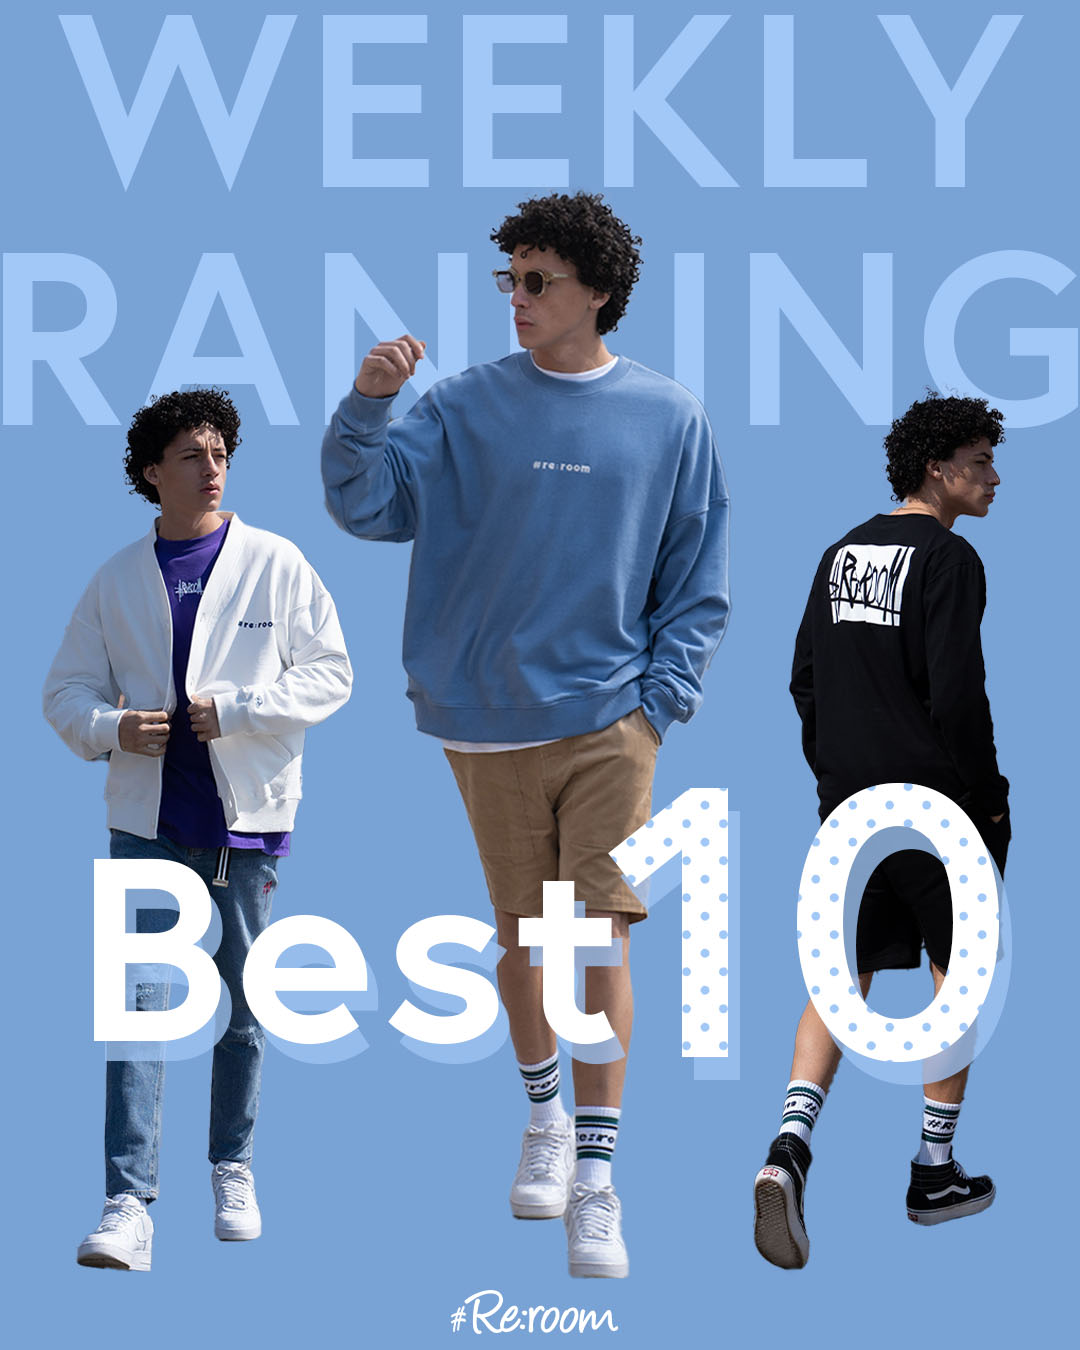 WEEKLY RANKING best10 vol.4